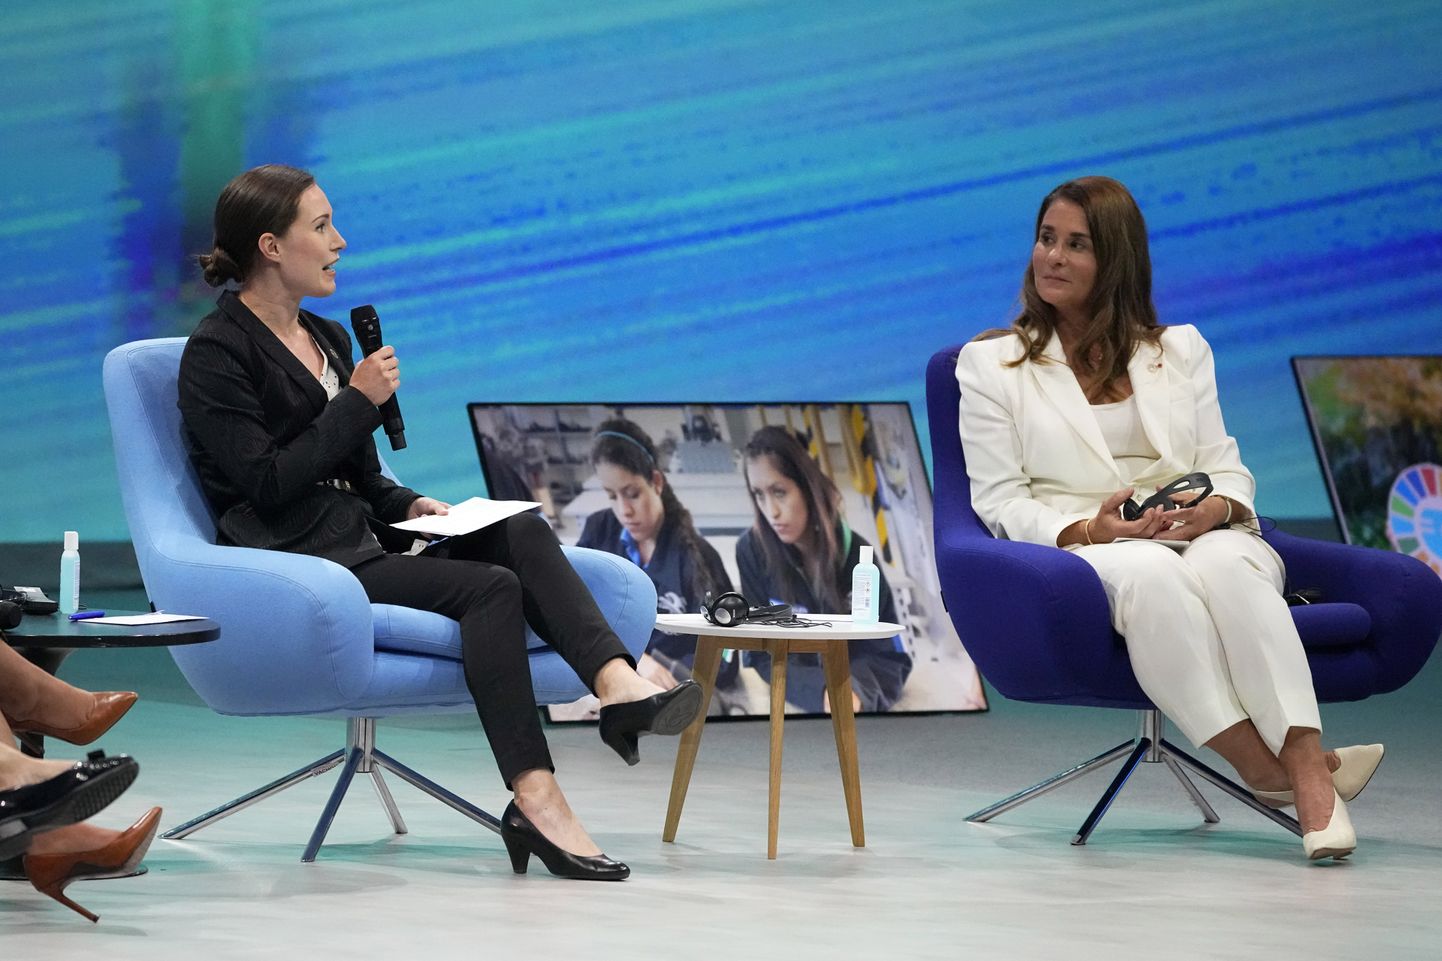 Soome peaminister Sanna Marin (vasakul) ning Melinda Gates juuni lõpus rahvusvahelisel soolise võrdsuse konverentsil Pariisis.